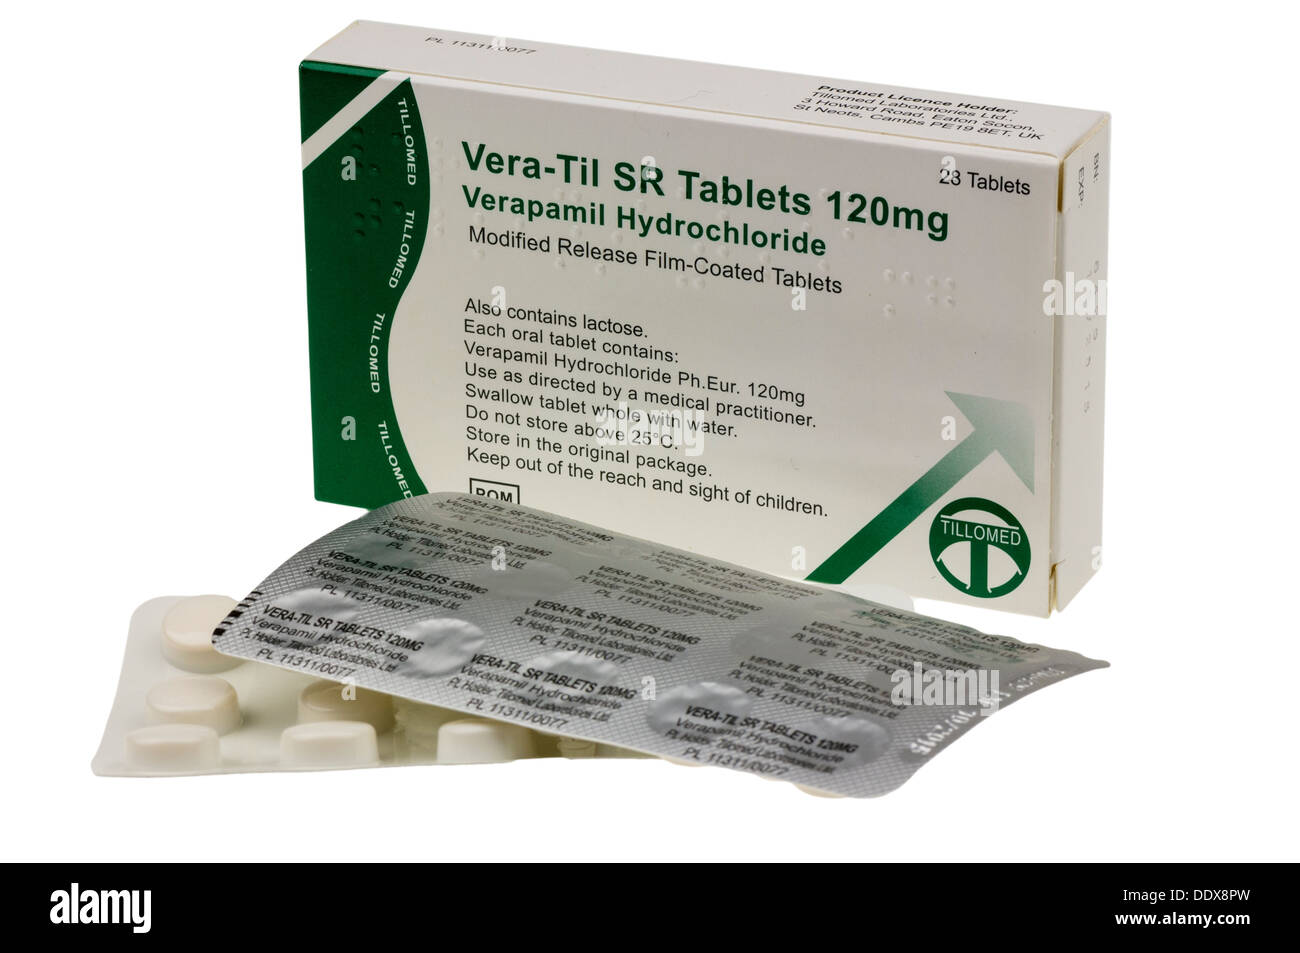 Paket von Vera-Til SR 120mg Tabletten (Verapamil Hydrocloride) zur  Behandlung von Angina pectoris, Herzrhythmusstörungen und Bluthochdruck  Stockfotografie - Alamy